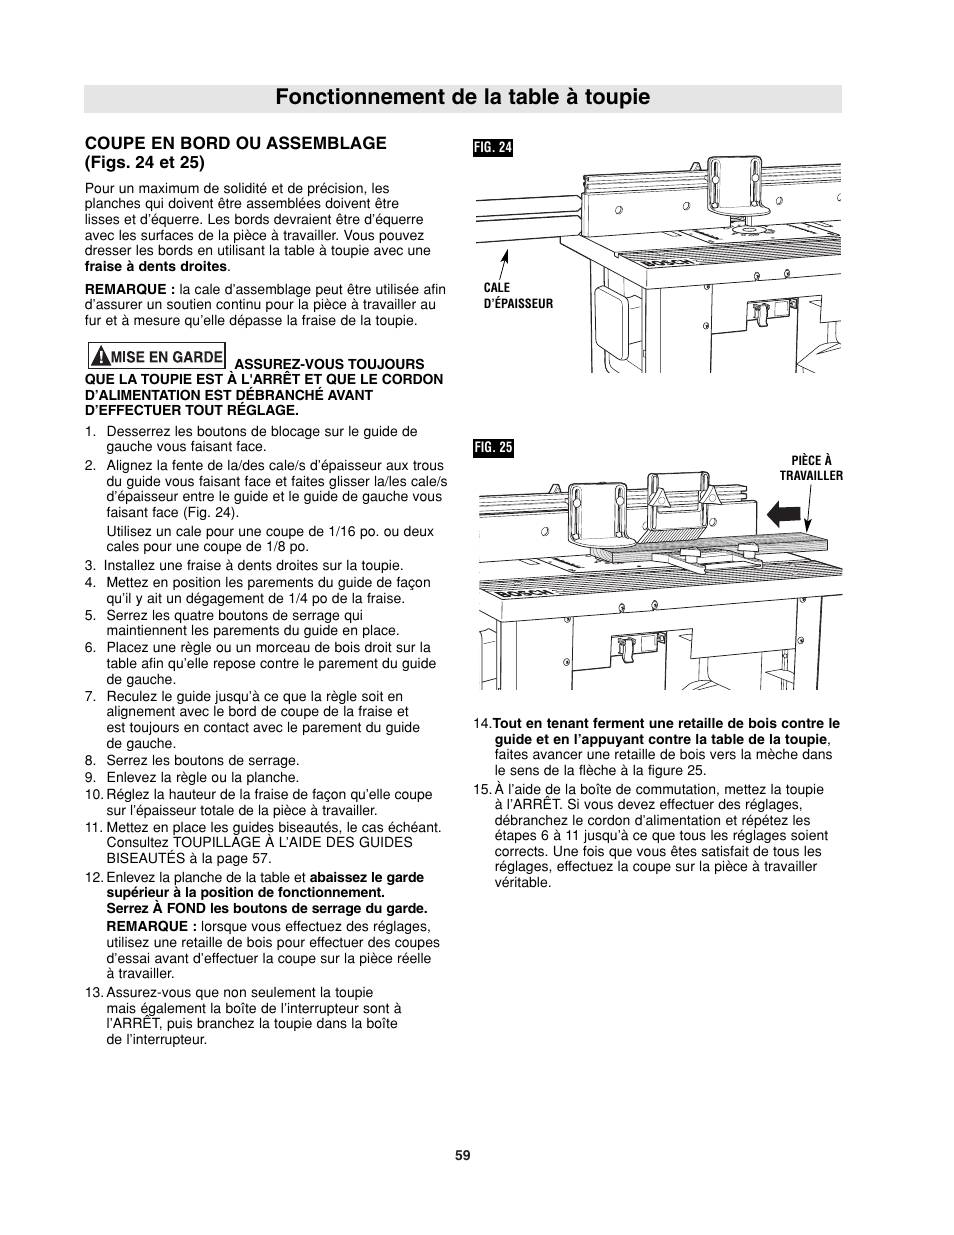 Fonctionnement de la table à toupie | Bosch RA1181 User Manual | Page 59 /  96 | Original mode